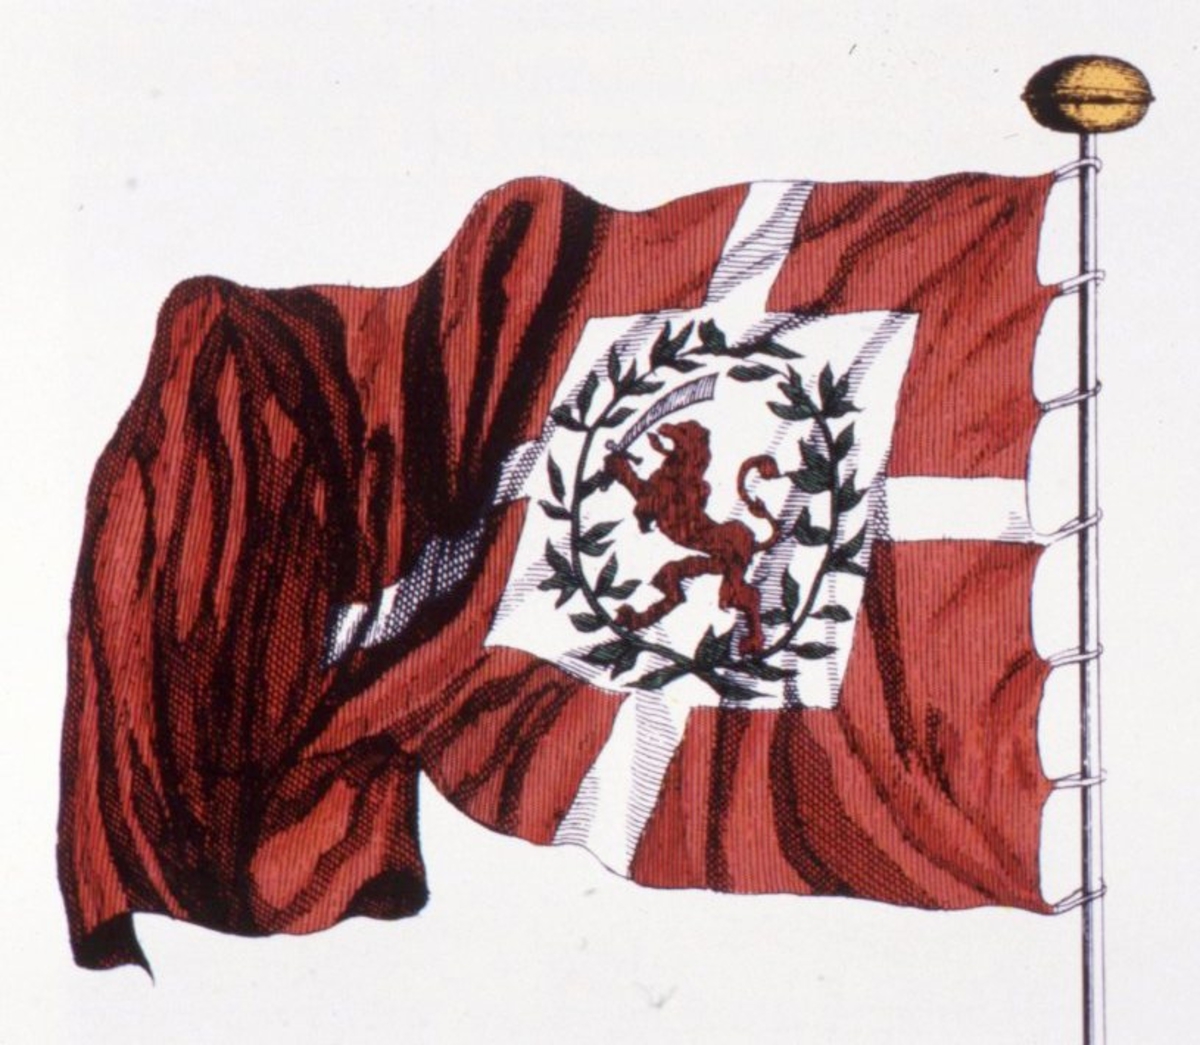 Motiv: Bergensflagget ca 1700. Danebrog med den norske løve omgitt av en bladkrans i et hvitt feldt midt i korset. Løven bærer sverd og går fra flaggliket